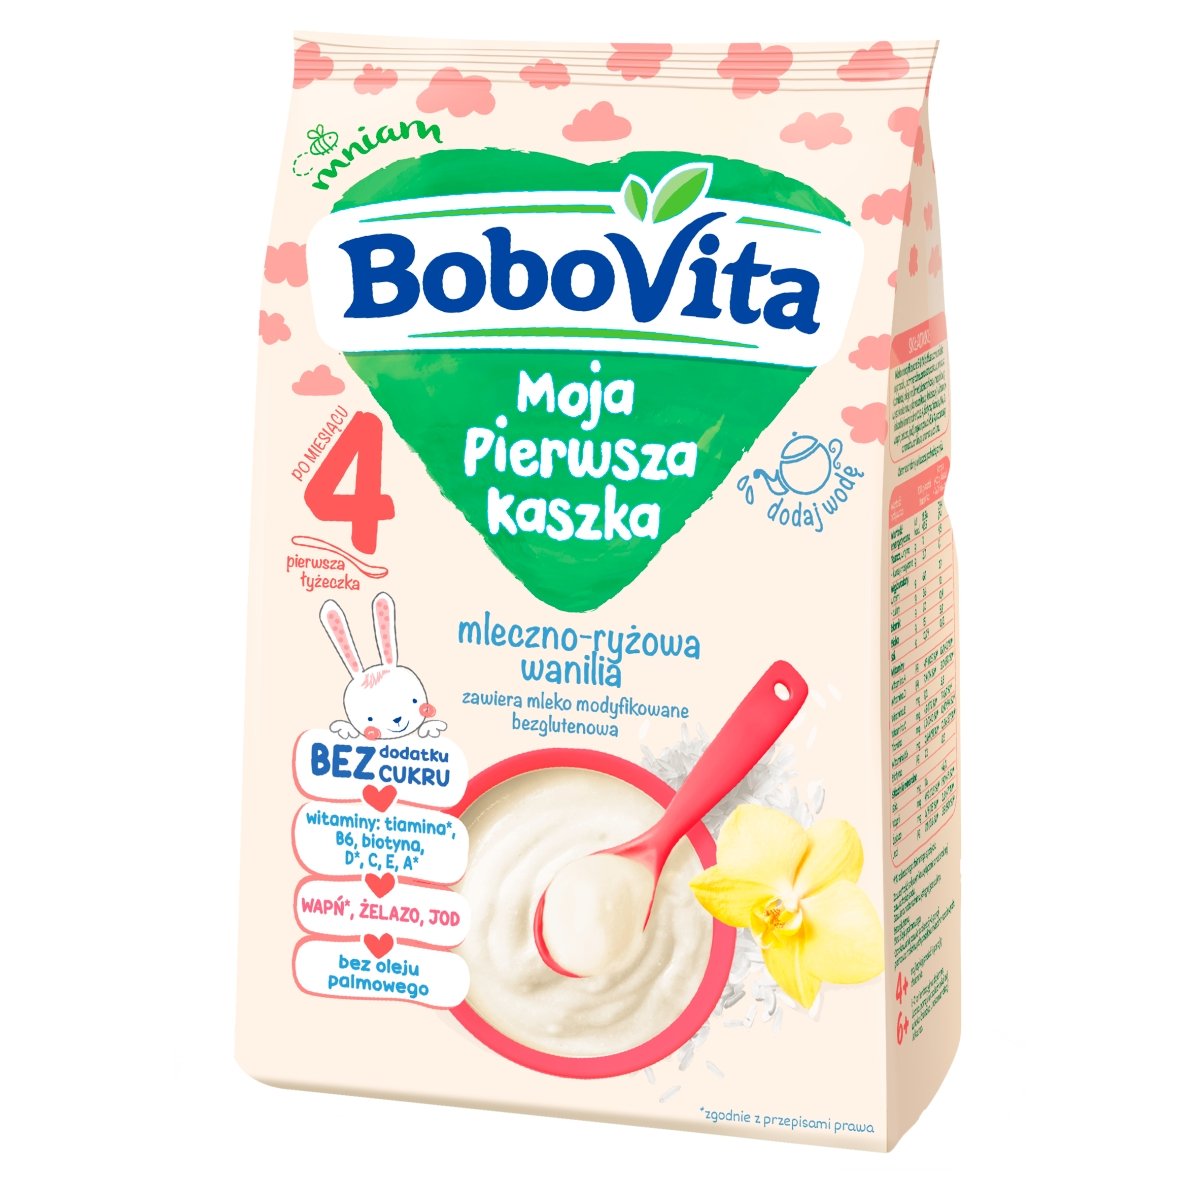 Фото - Дитяче харчування BoboVita Moja Pierwsza Kaszka mleczno-ryżowa wanilia po 4. miesiącu 230 g 